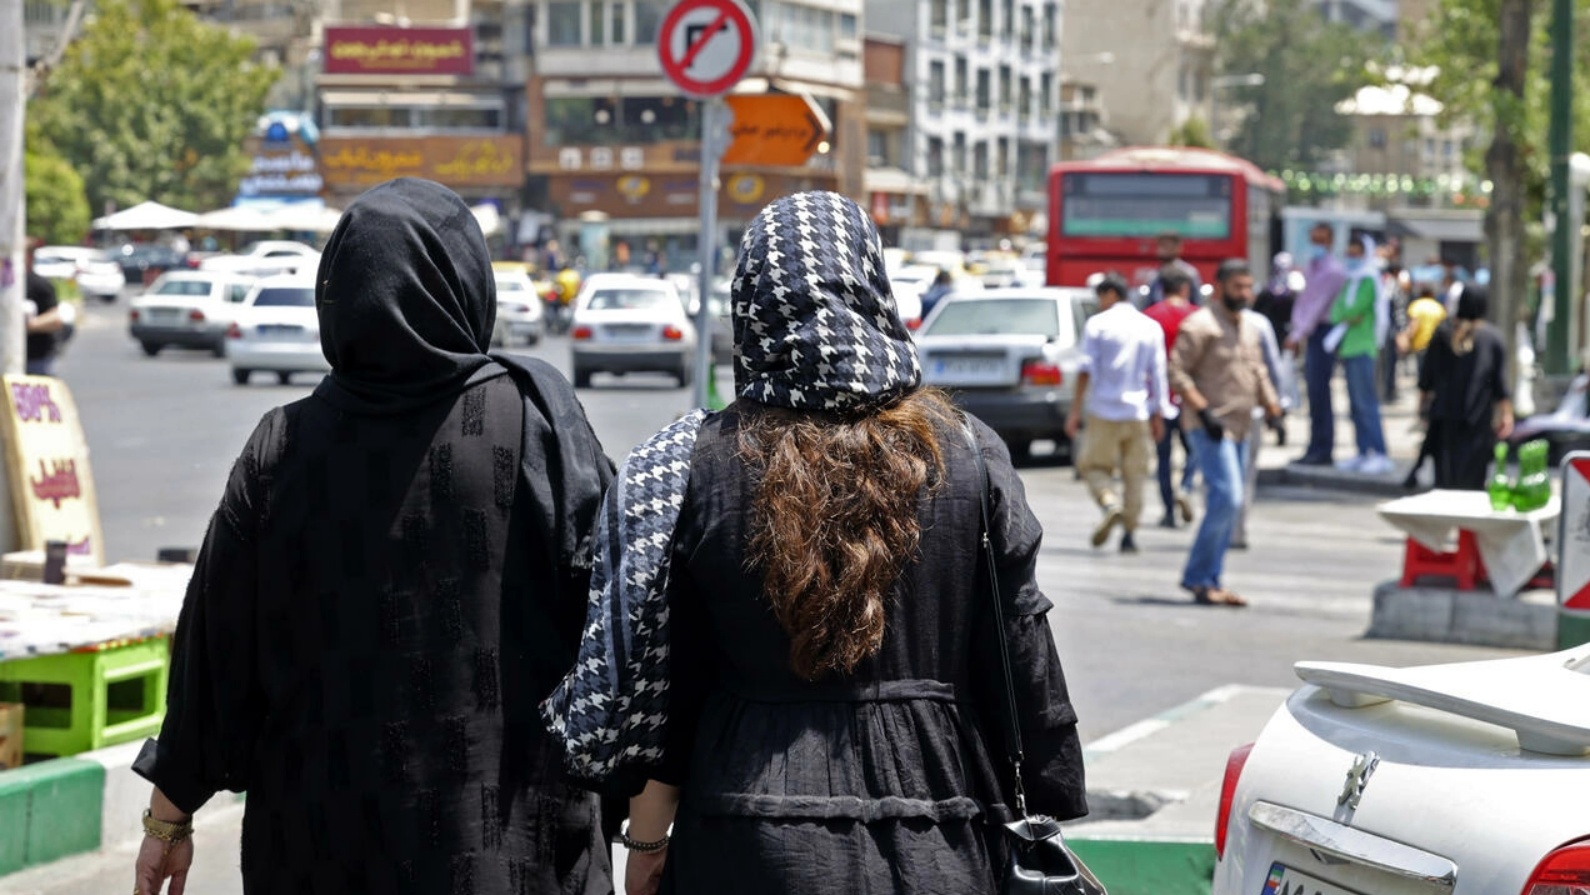 بعد الثورة الإسلامية عام 1979، ألزم القانون جميع النساء بغض النظر عن الجنسية أو المعتقدات الدينية بوضع حجاب يغطي الرأس والرقبة